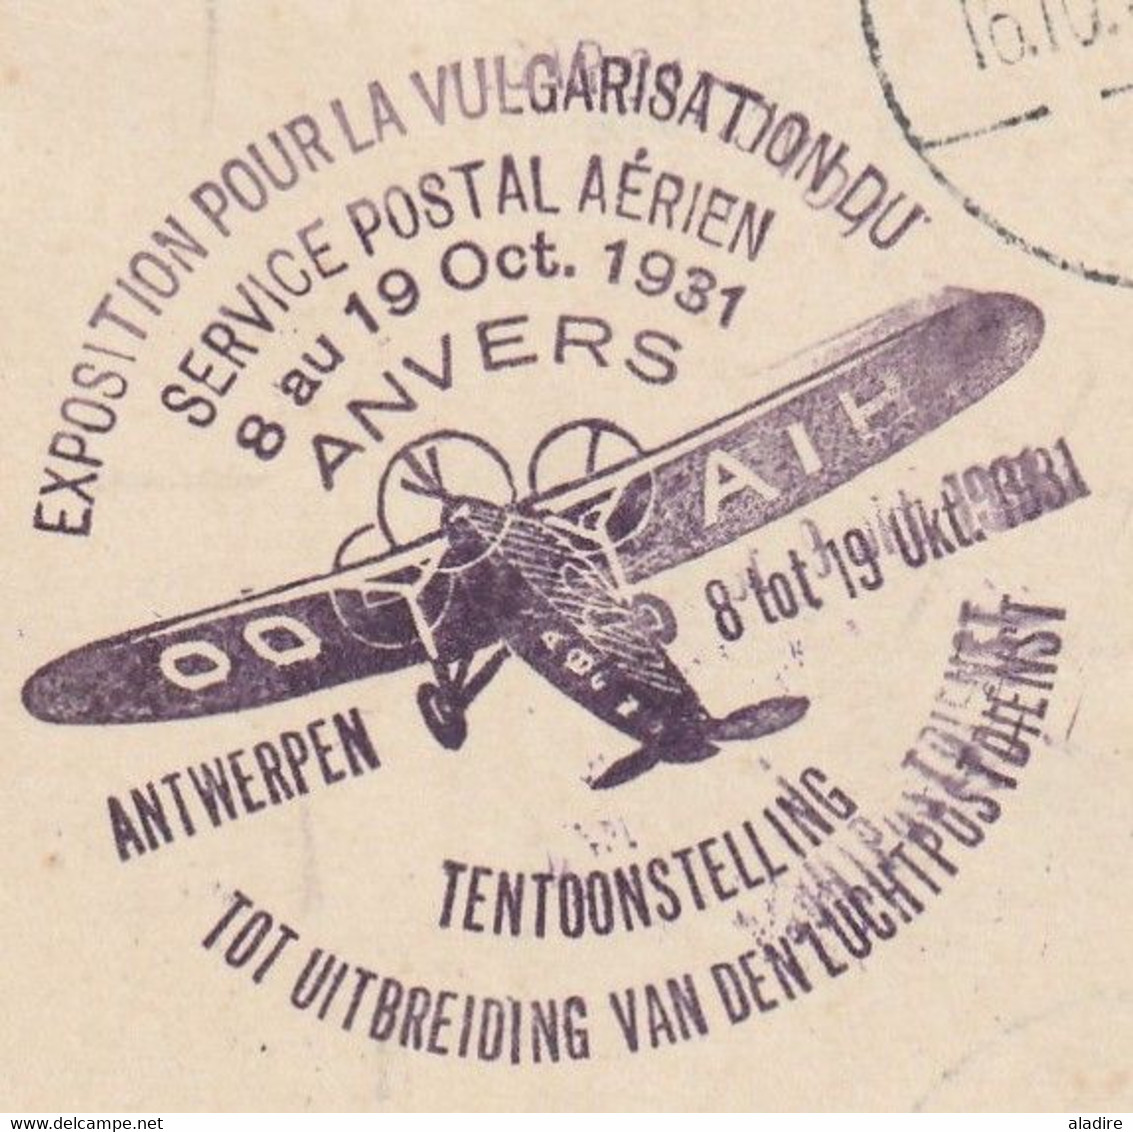 1931 - CP D'Anvers Antwerpen Par Avion Vers Malmo Malmoe Suède - Timbre Surchargé Service Postal Aérien - Lettres & Documents